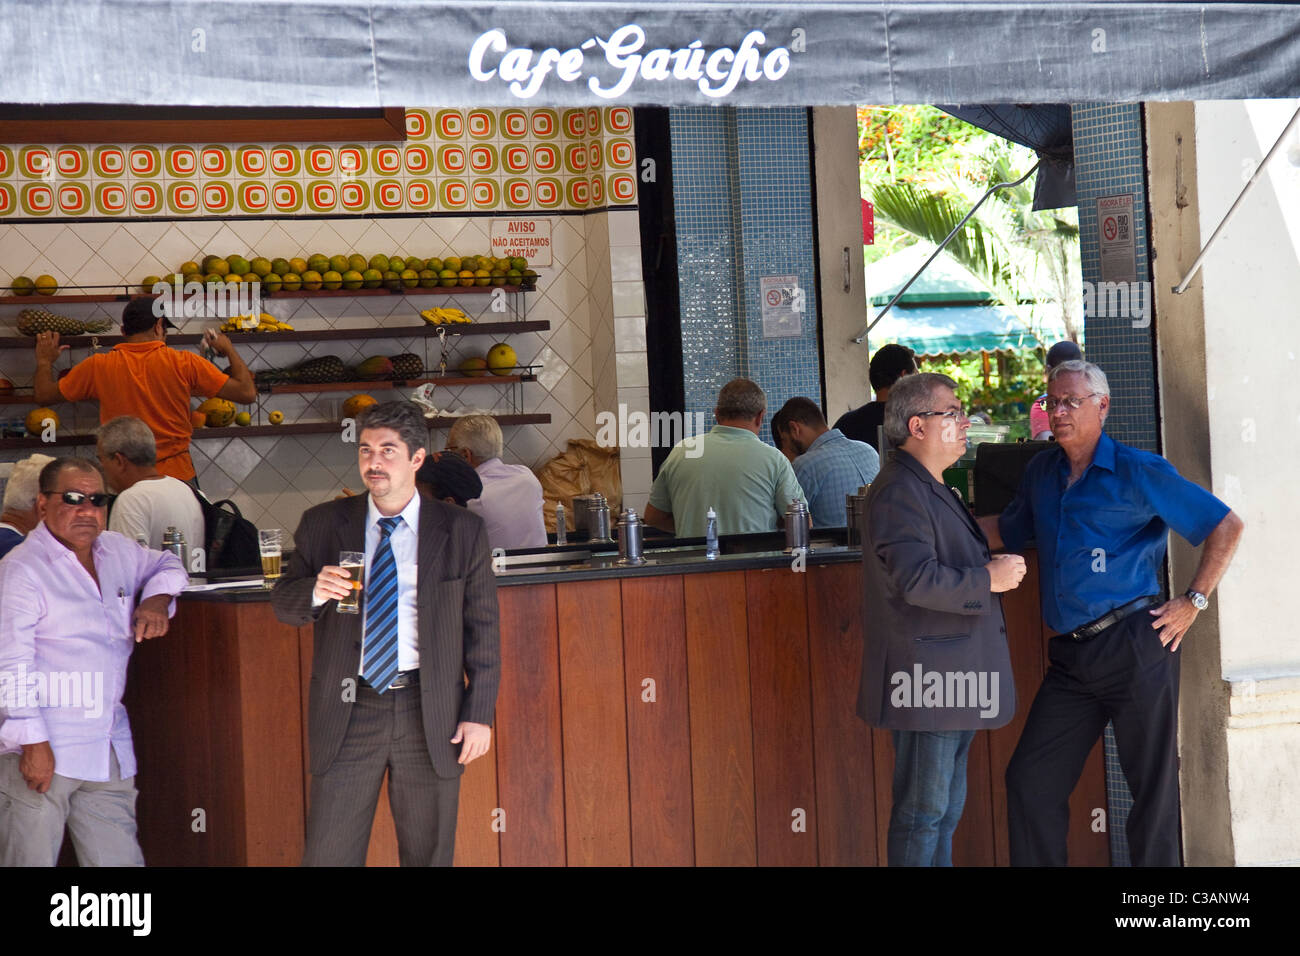 Cafe Gaucho, Rio de Janeiro, Brazil Stock Photo